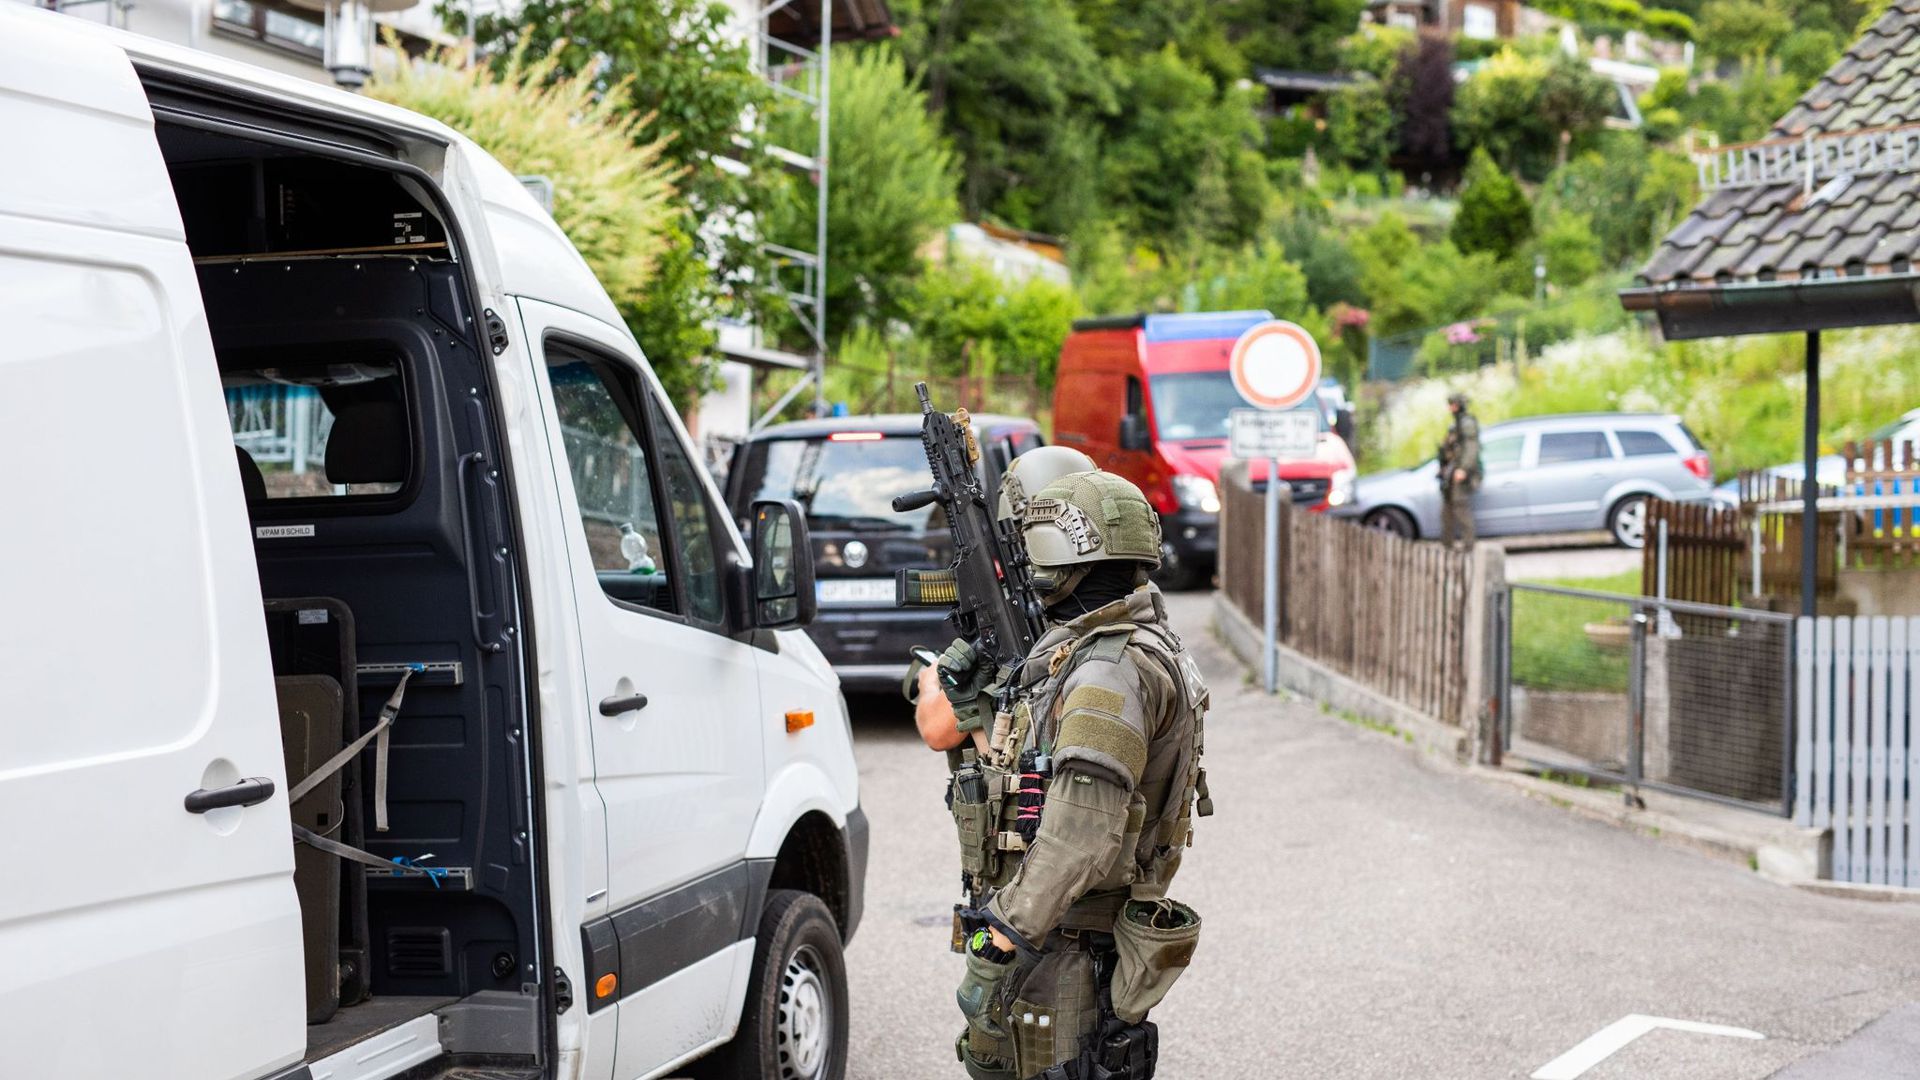 Polizisten des Sondereinsatzkommandos SEK stehen in einem Wohngebiet am Rand der Ortschaft Oppenau.